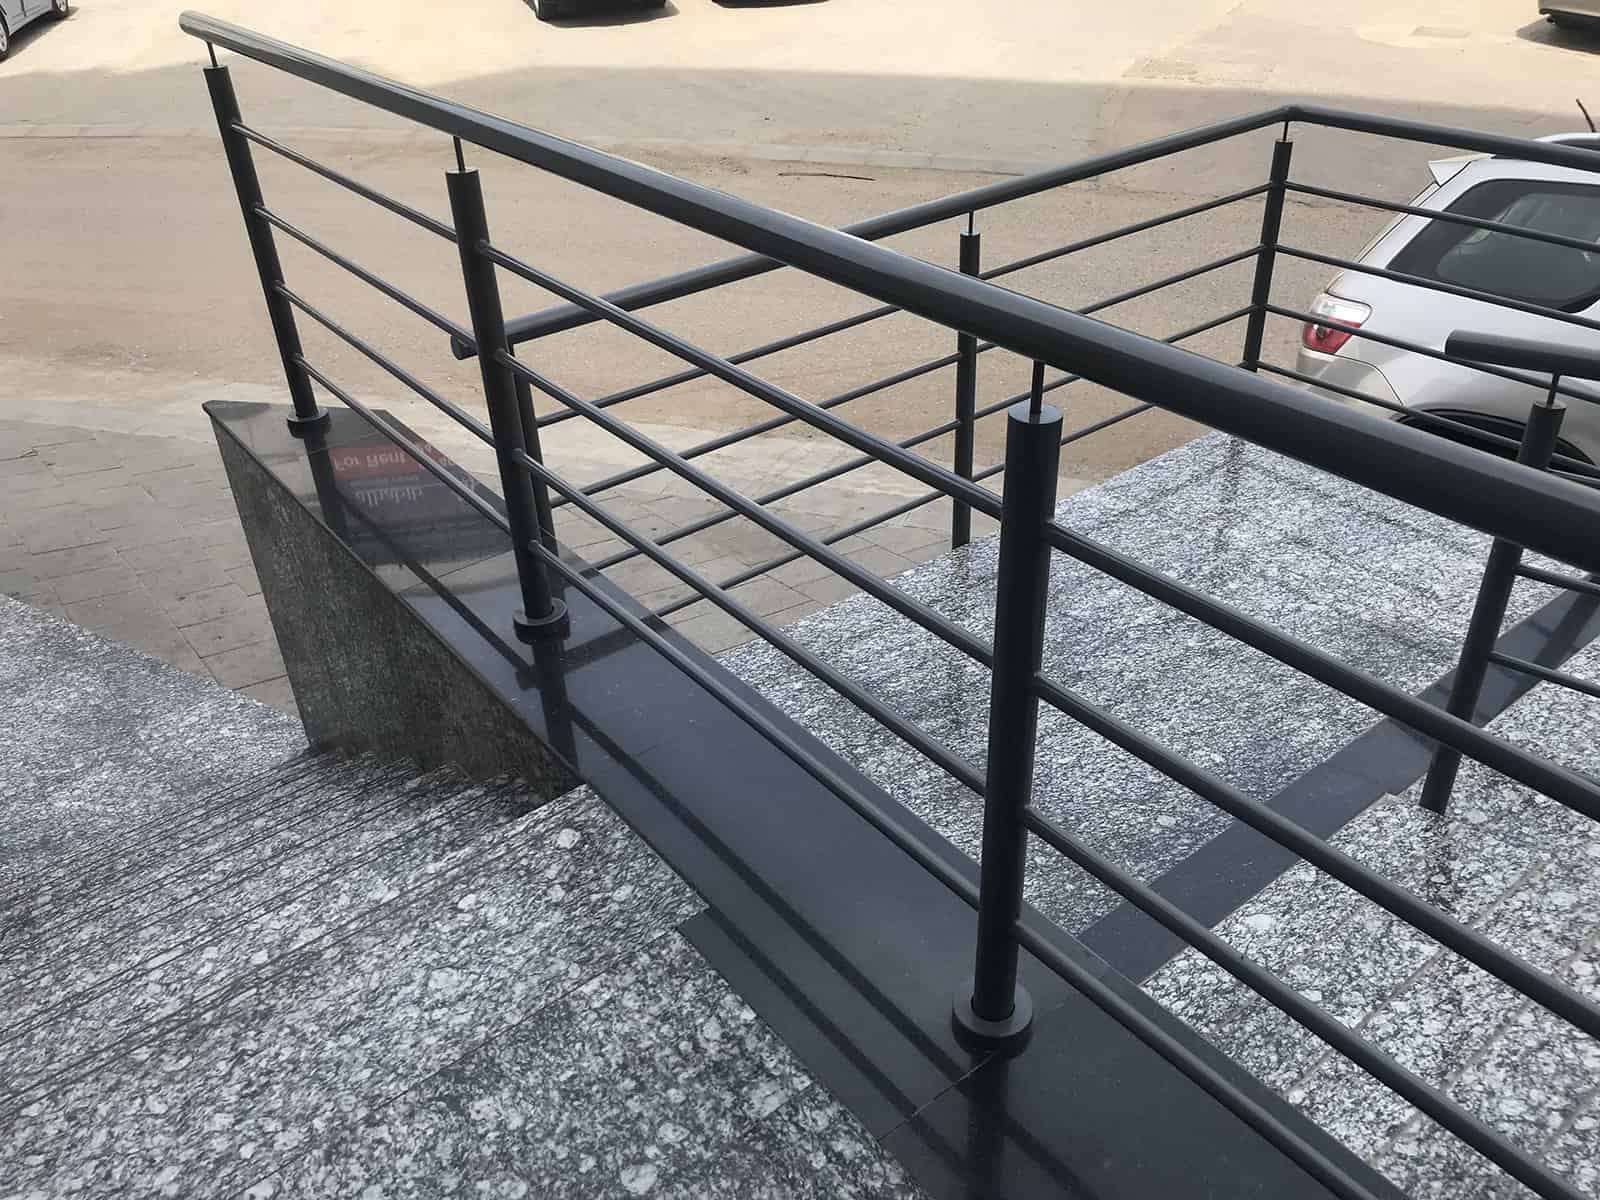 balustrady na schody zewnętrzne